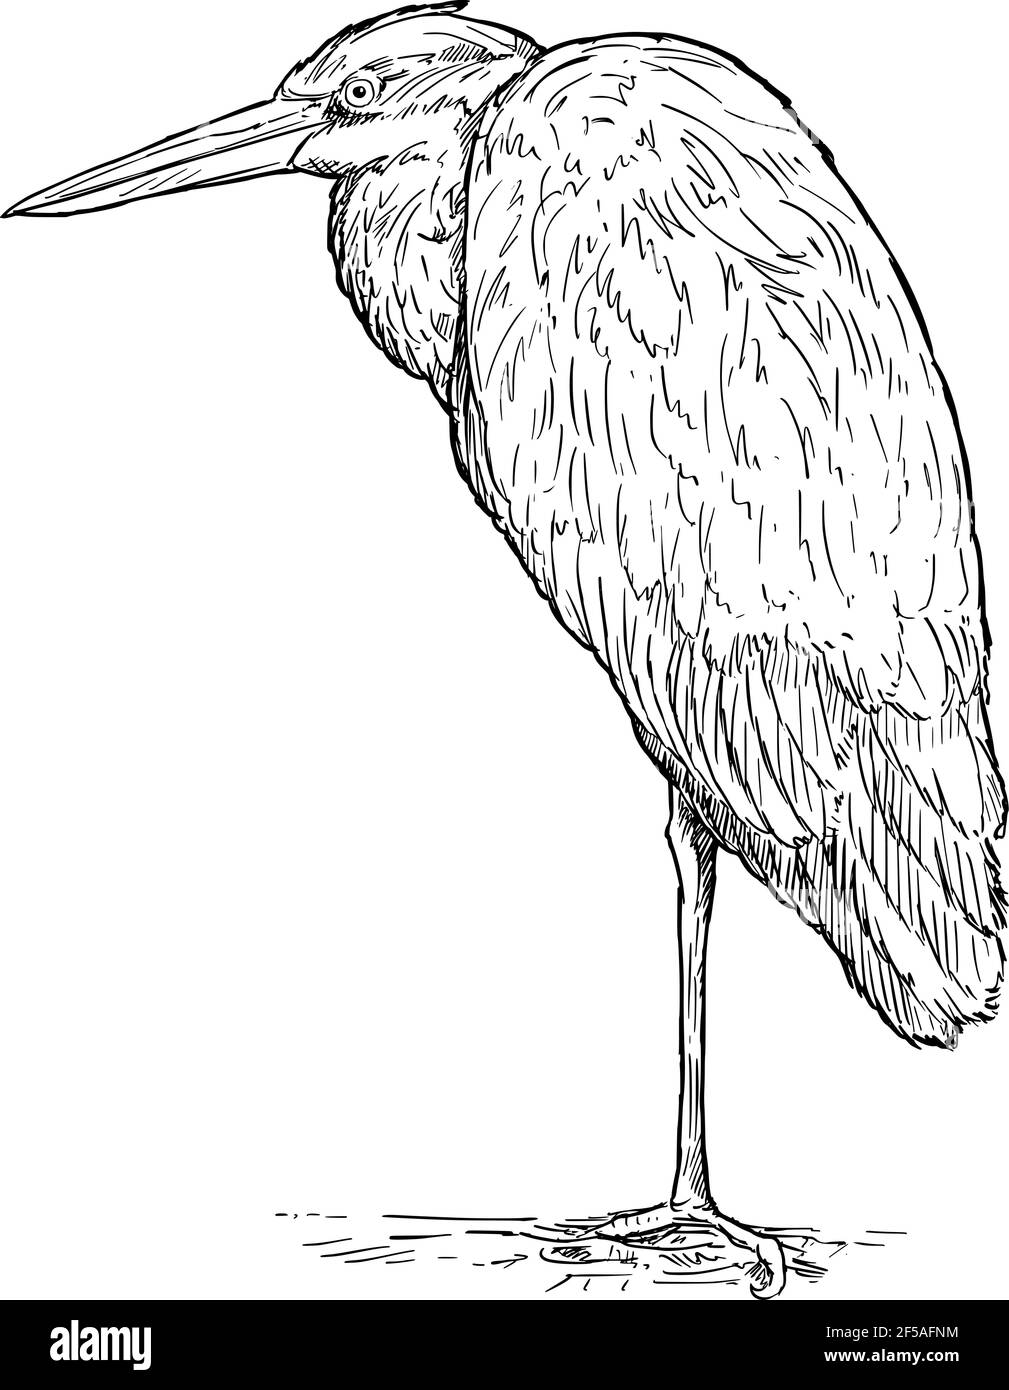 Oiseau héron gris debout. Dessin vectoriel ou illustration Illustration de Vecteur